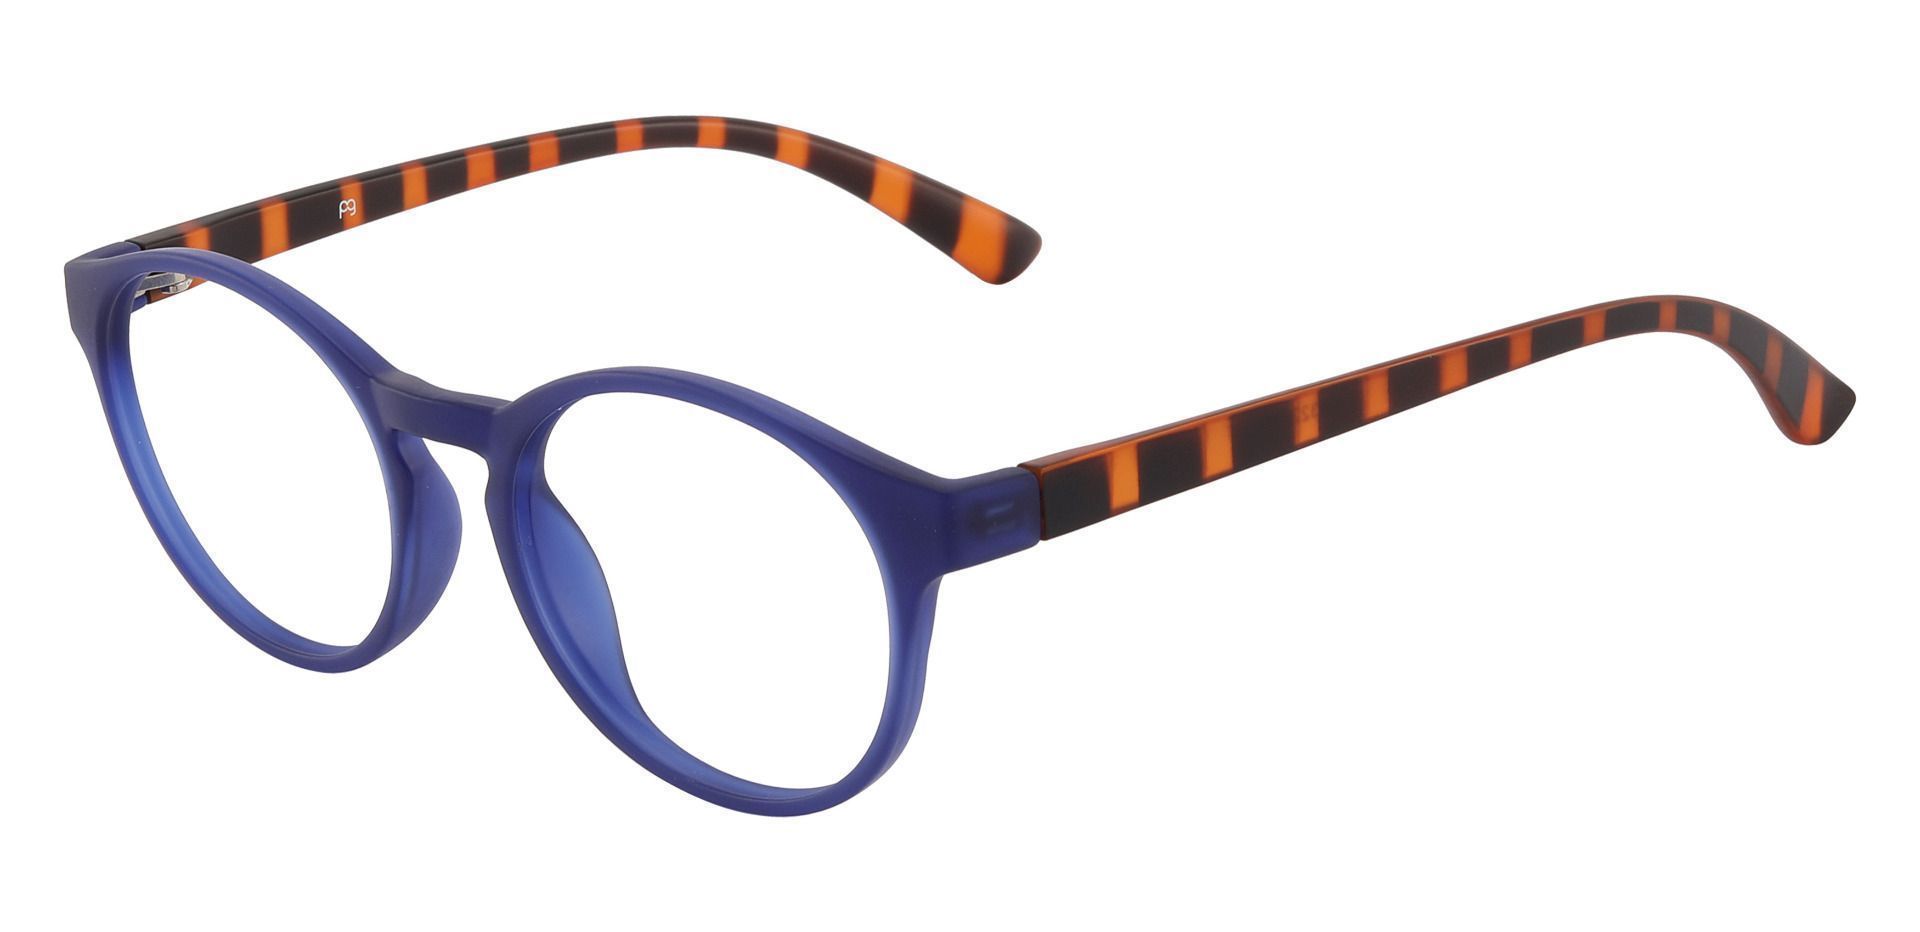 Kalida Oval Lined Bifocal Glasses - Blue